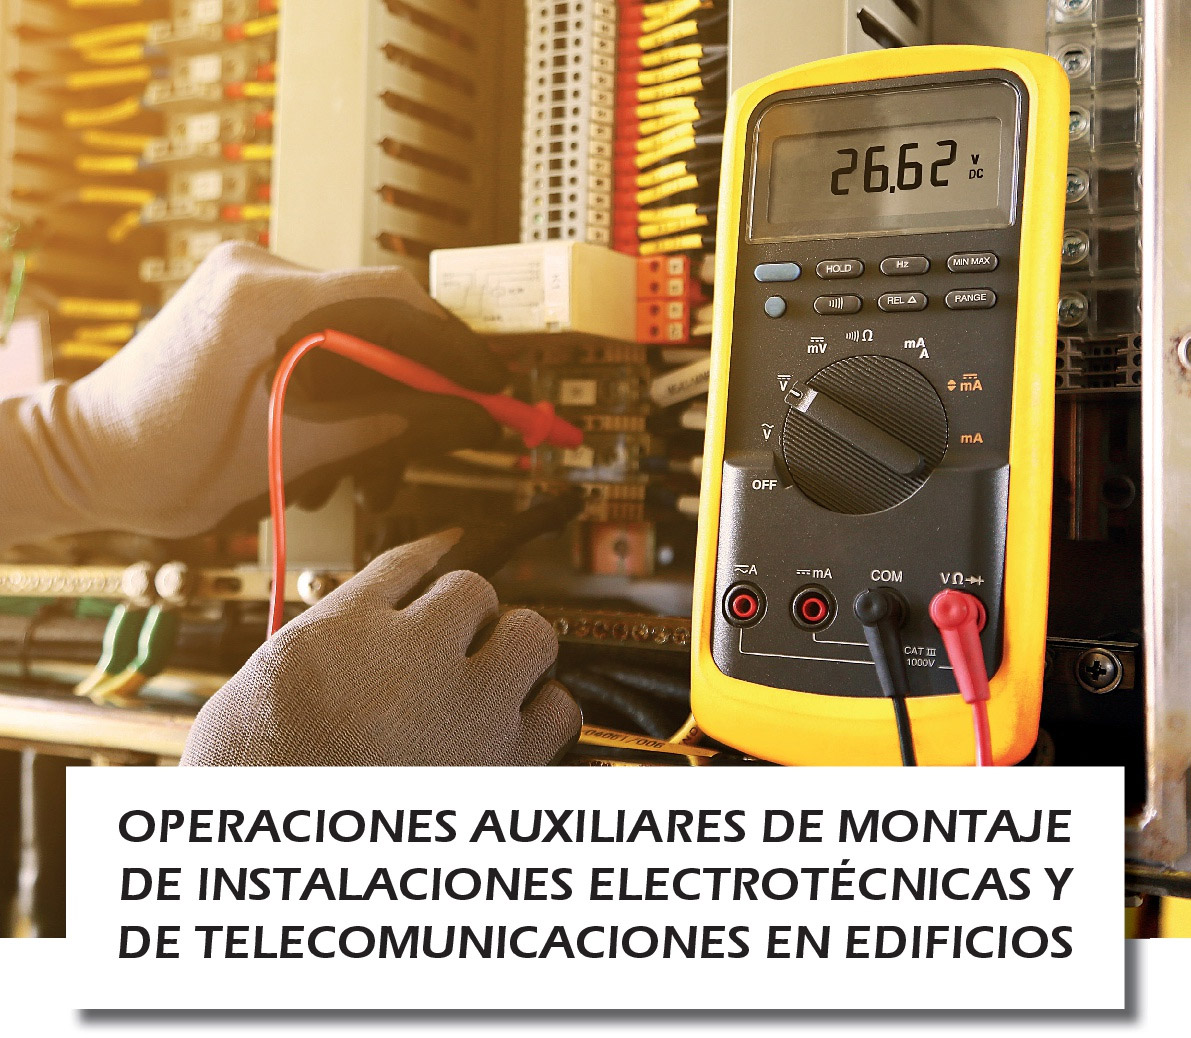 Operaciones Auxiliares de Montaje de Instalaciones Electrotécnicas y de Telecomunicaciones en Edificios - Centro de Formación Las Norias